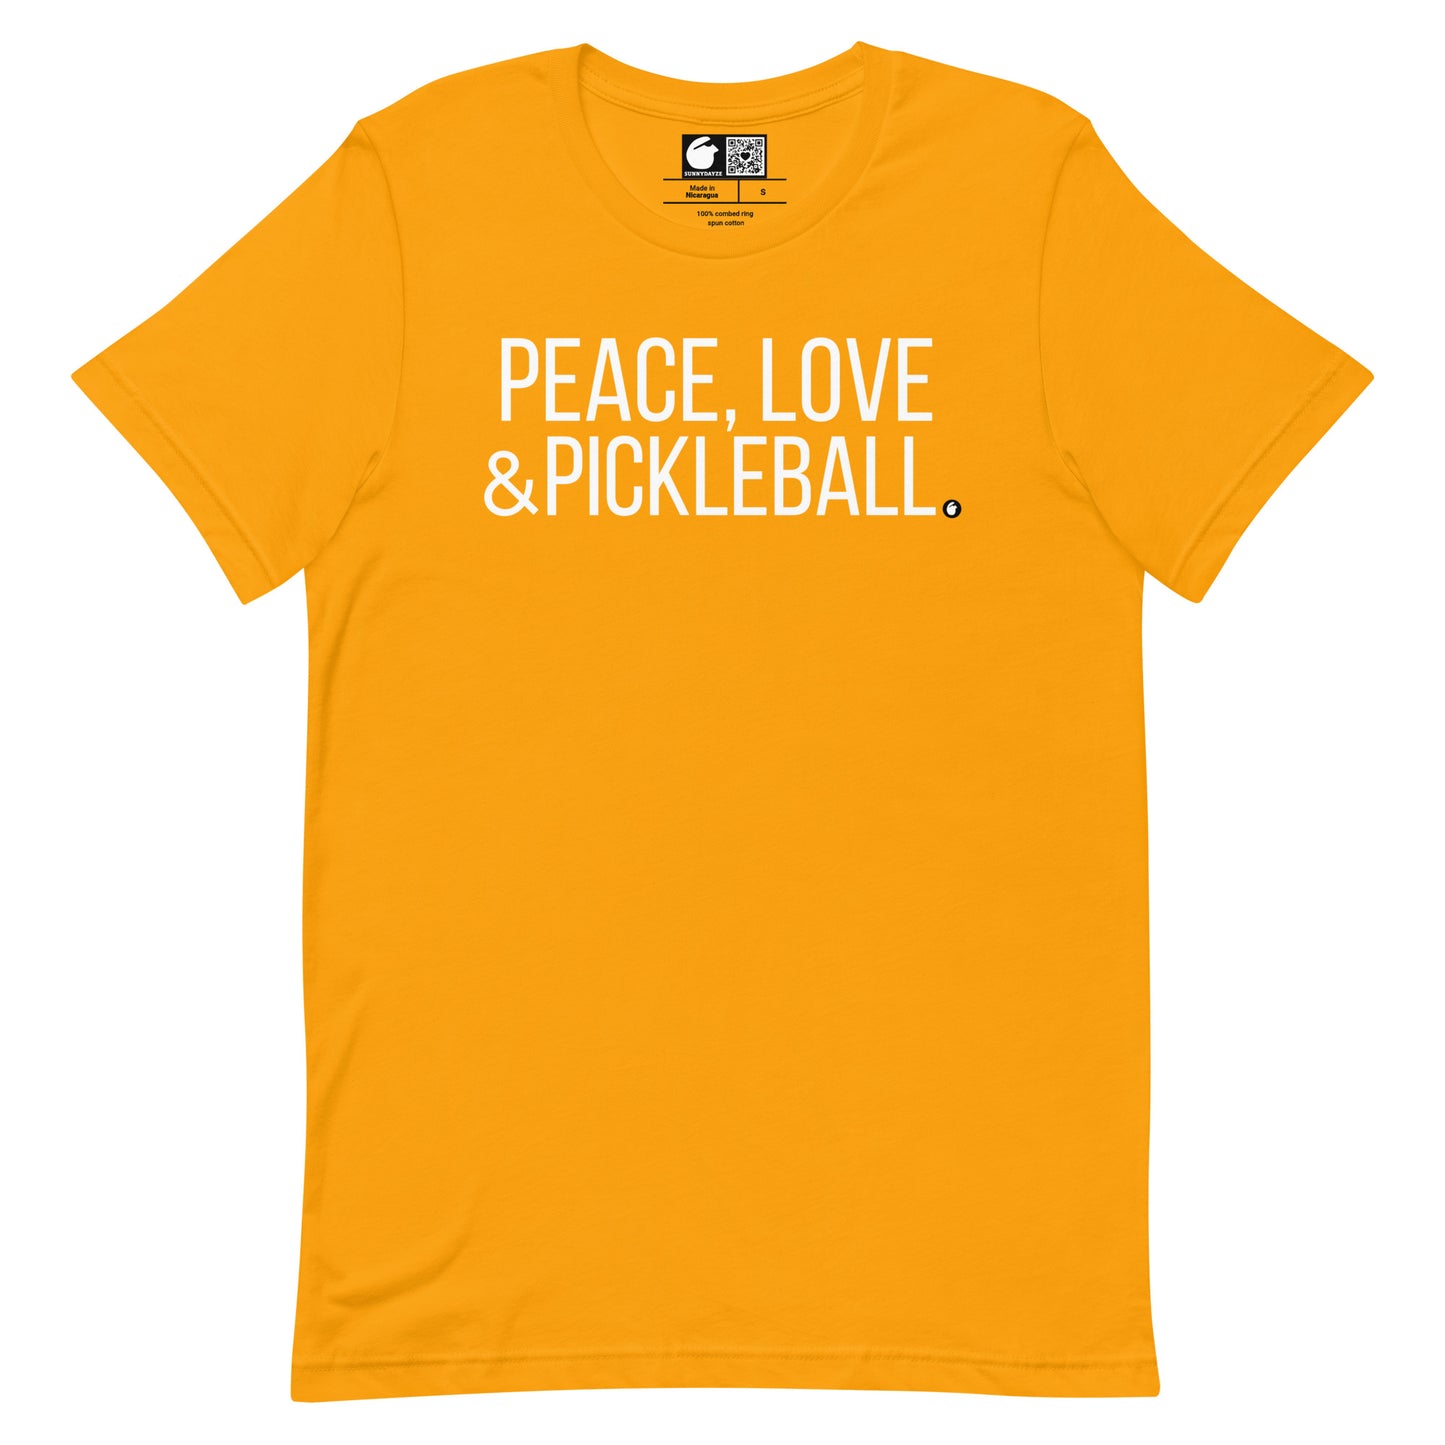 PICKLEBALL Short-Sleeve Unisex t-shirt